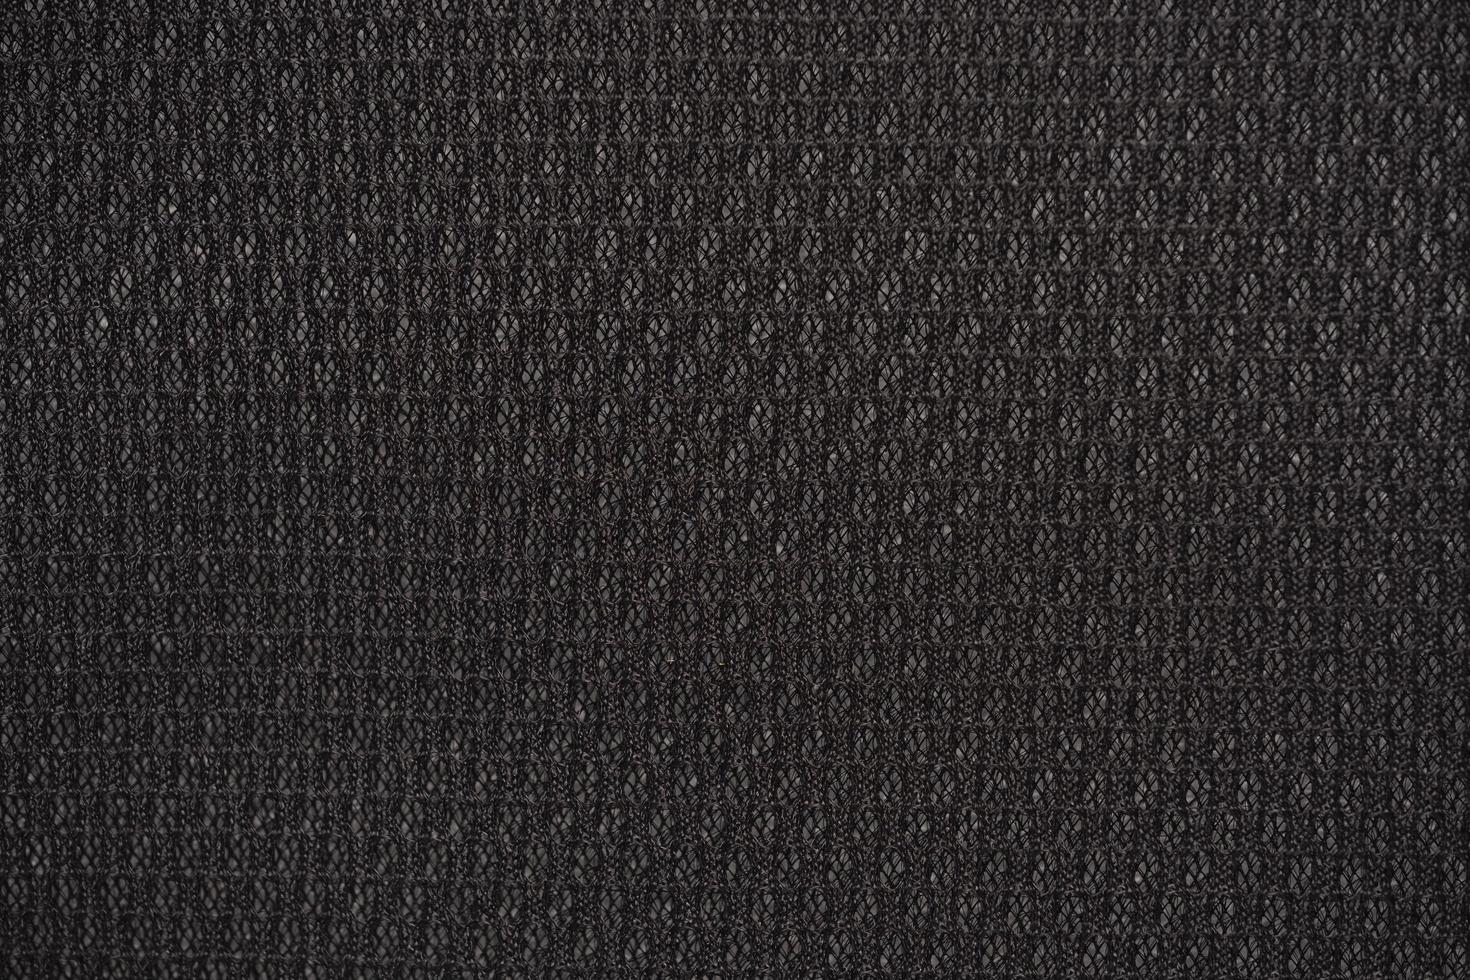 svart nylon tyg texturerad bakgrund med sexkantig form foto